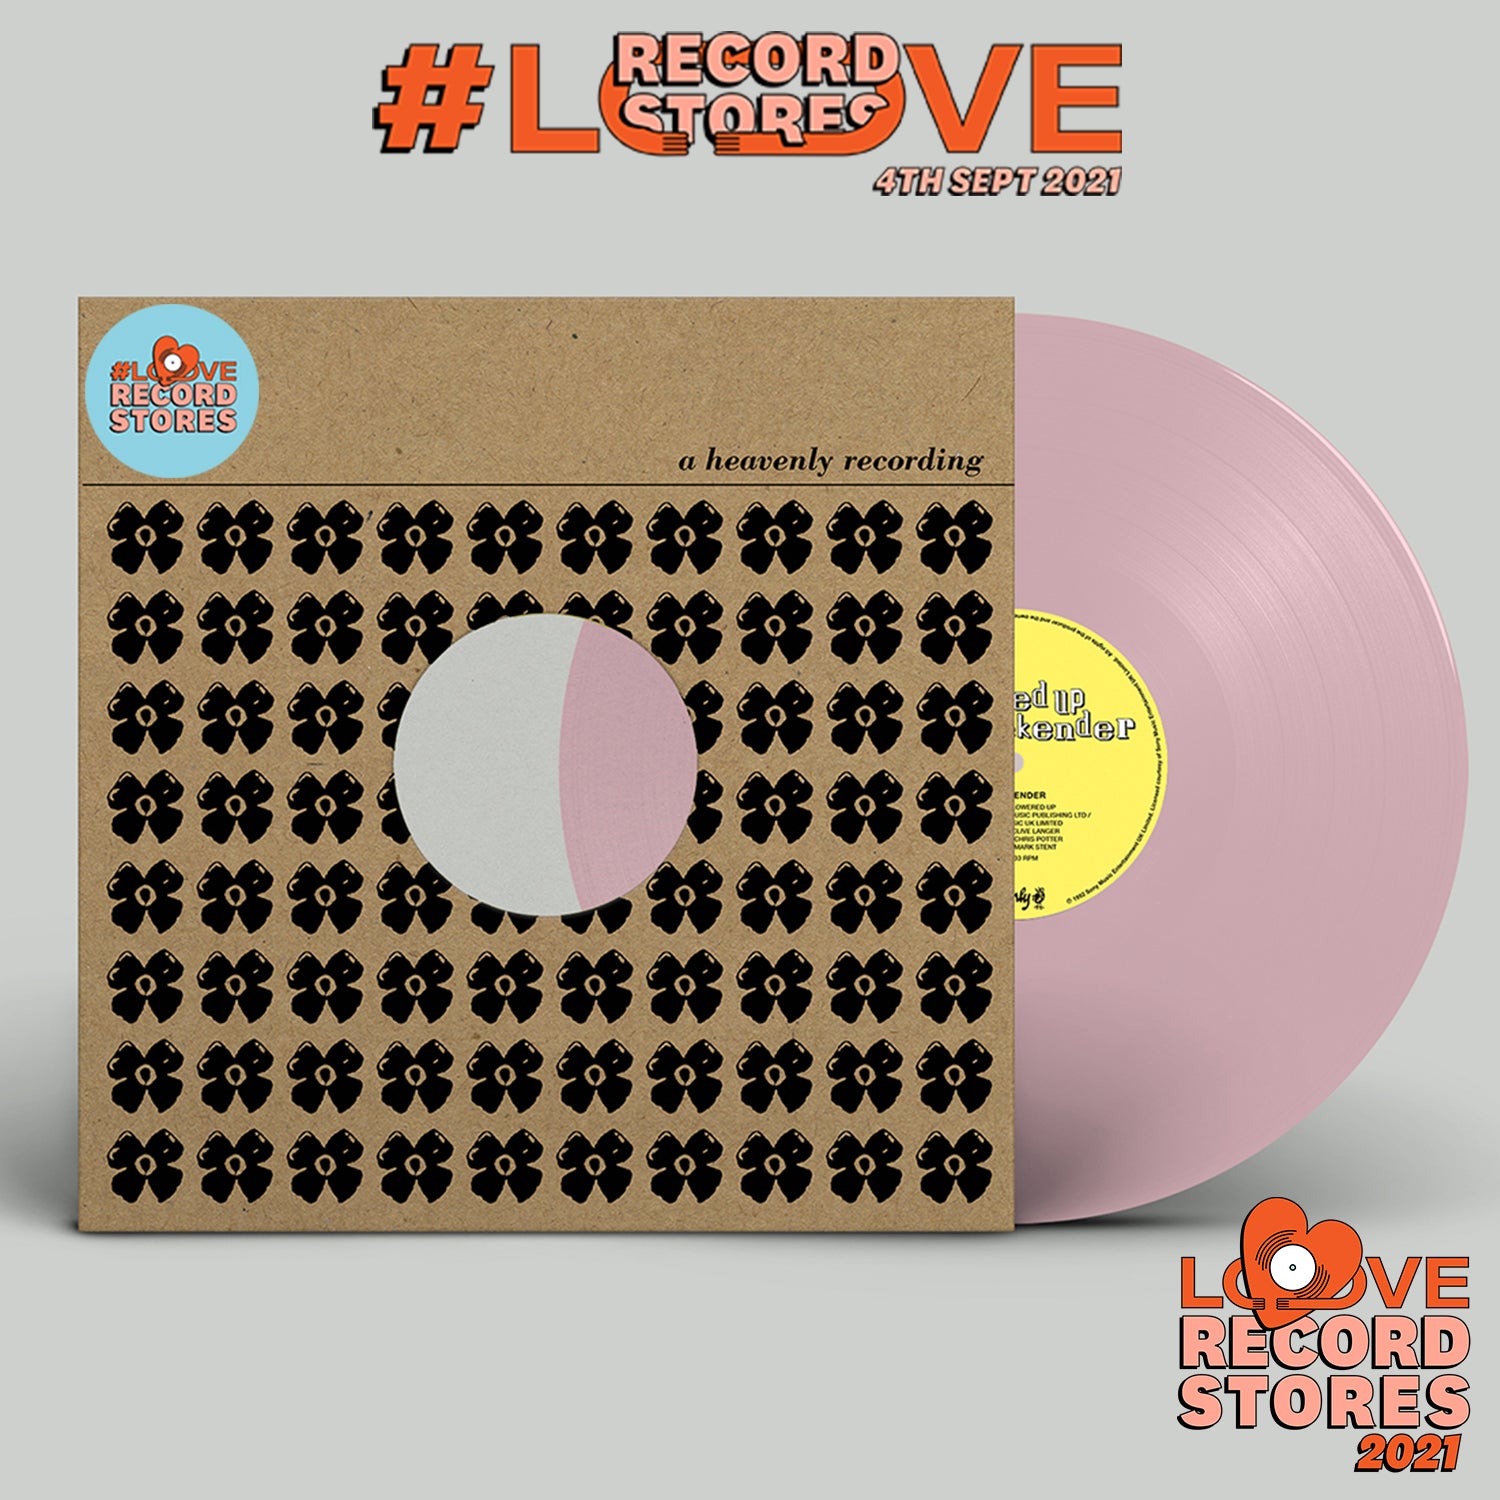 FLOWERED UP - Weekender (LRS 2021) - 12" - Pink Vinyl [SEP 4]